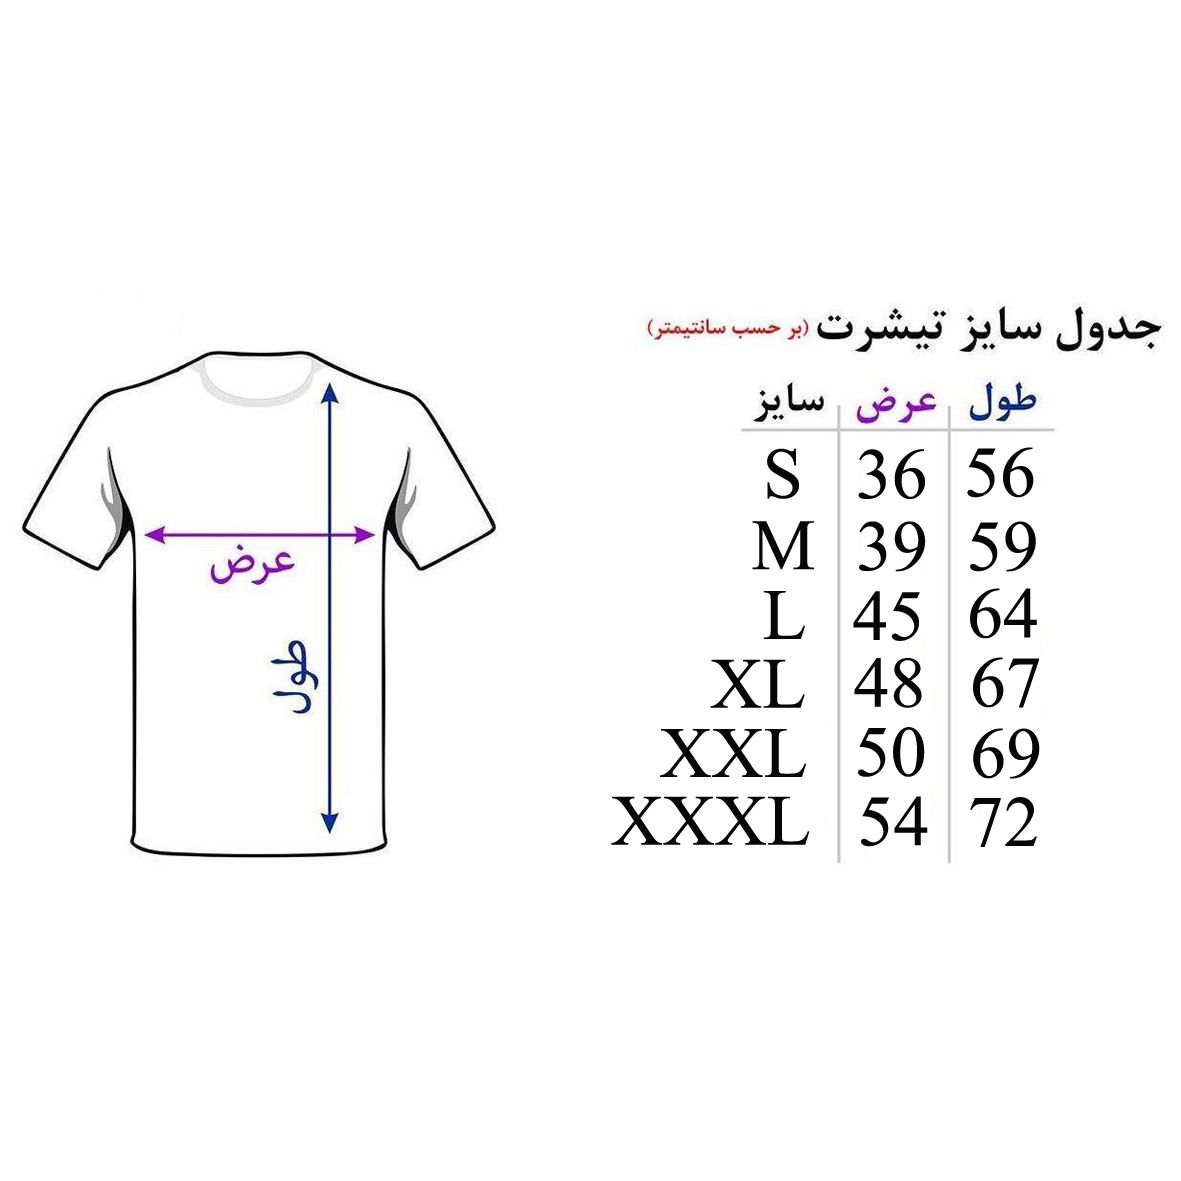  تی شرت آستین کوتاه مردانه اسد طرح مایکل جکسون کد 67 -  - 4